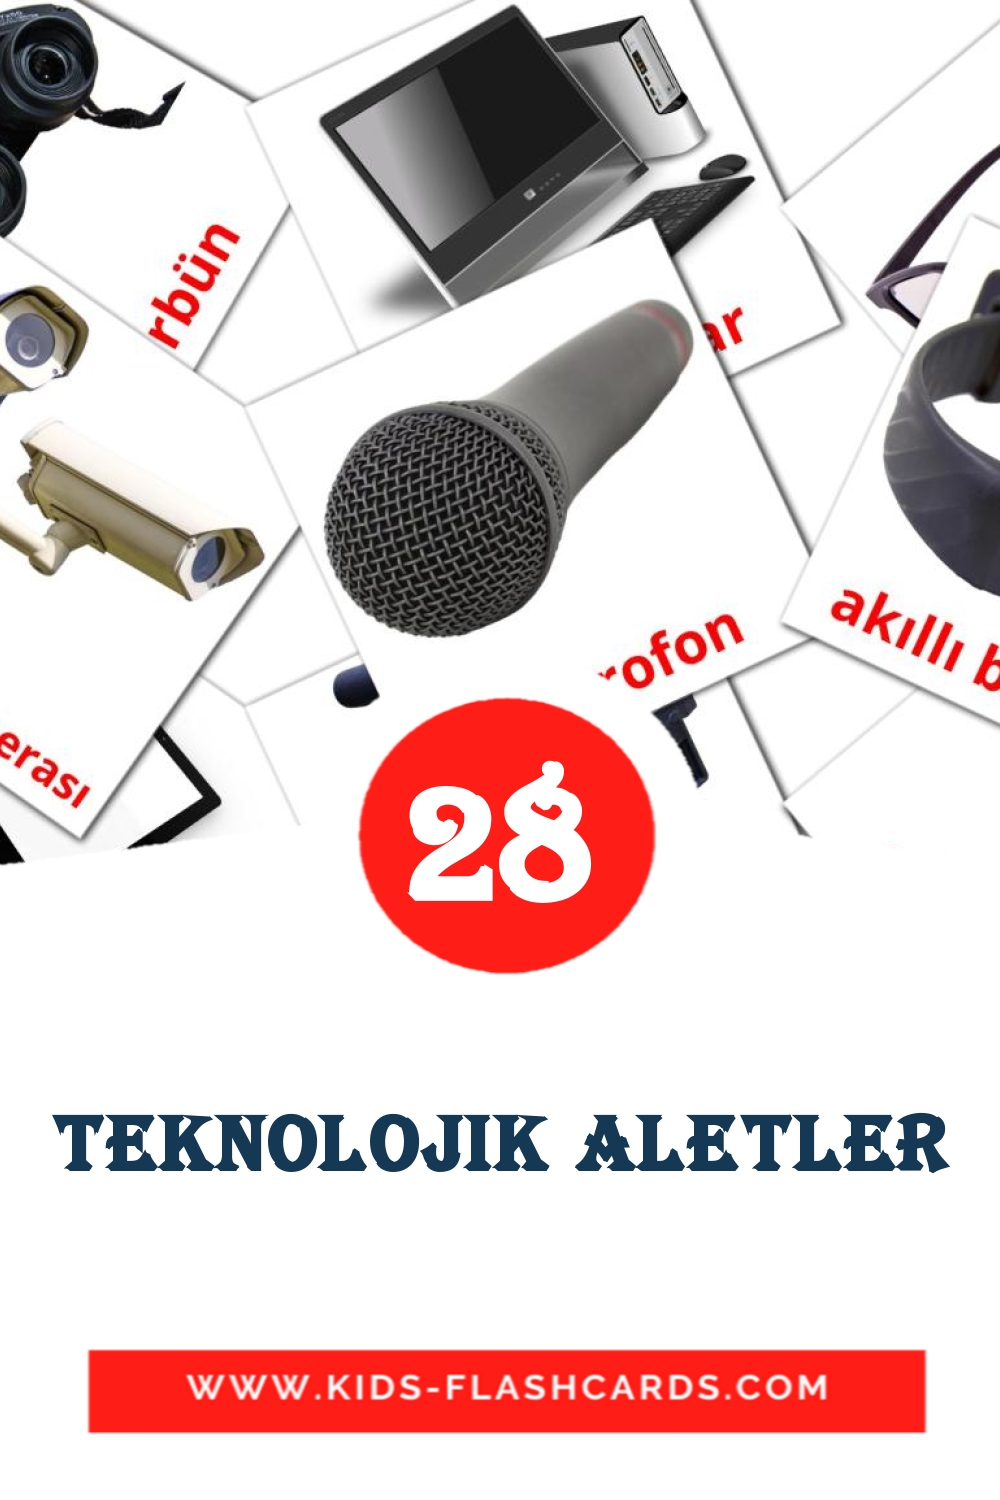 28 tarjetas didacticas de teknolojik aletler para el jardín de infancia en turco